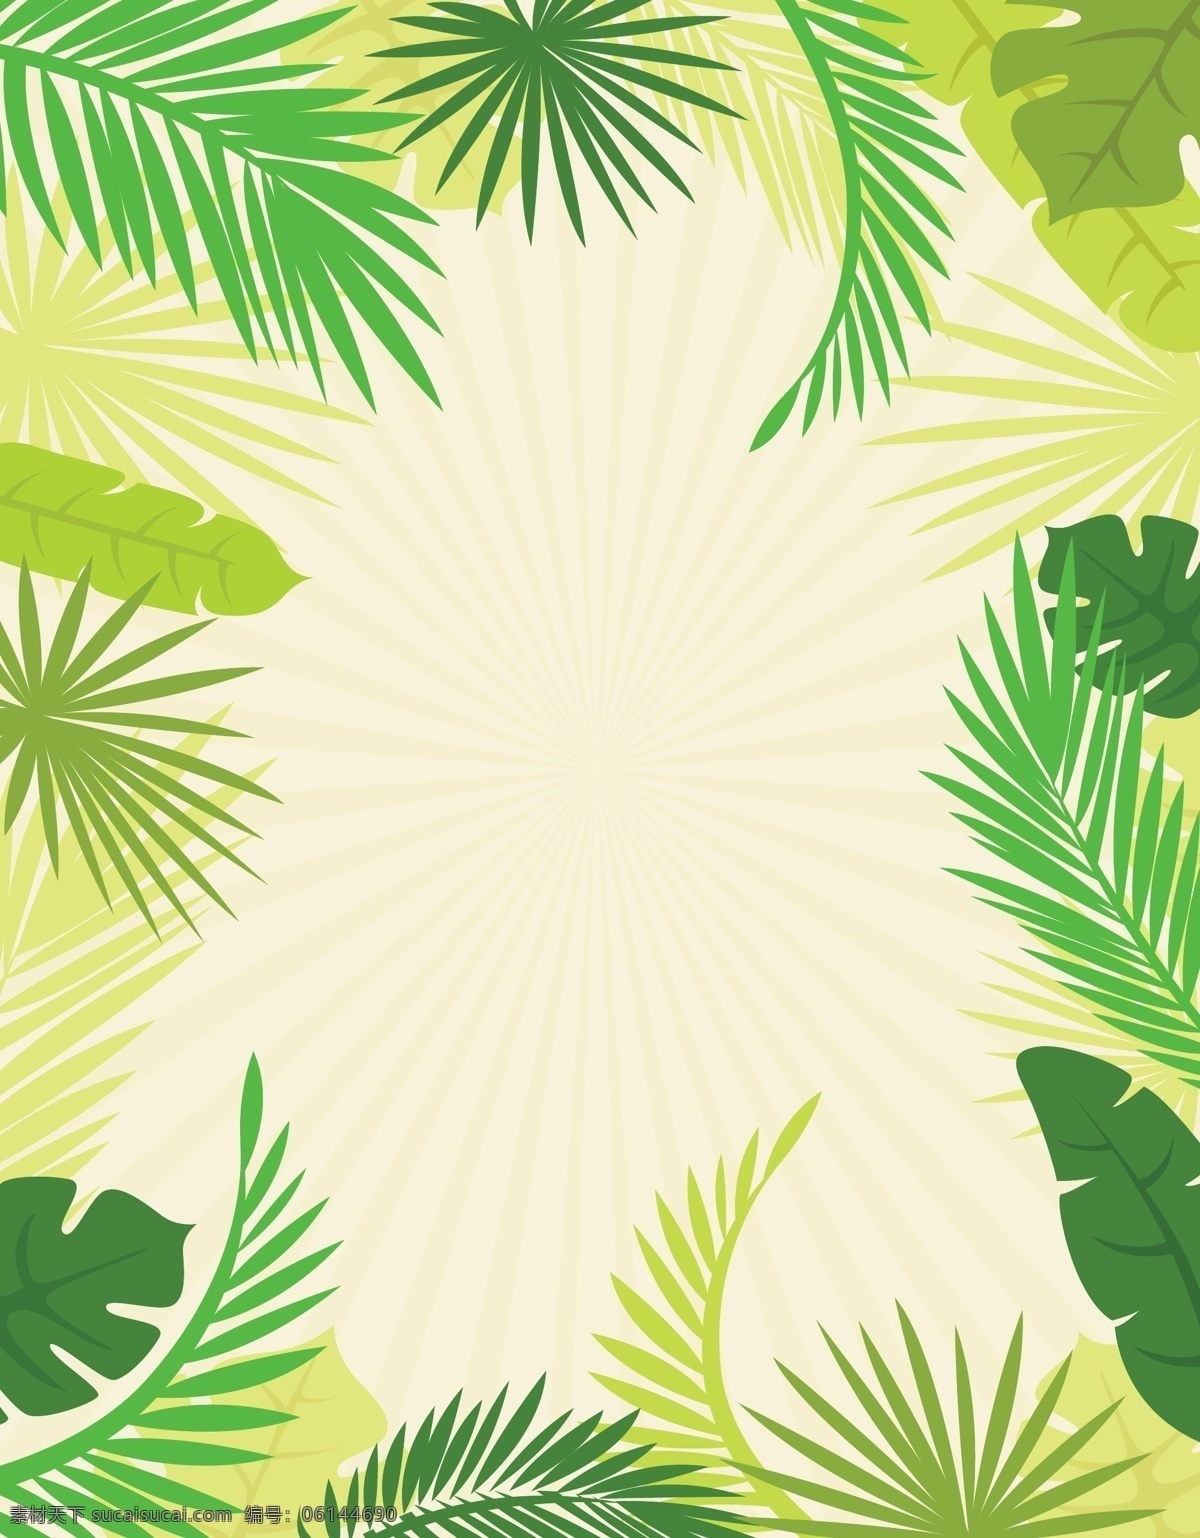 矢量 手绘 清新 树叶 边框 背景 海报 绿色 文艺 棕榈叶